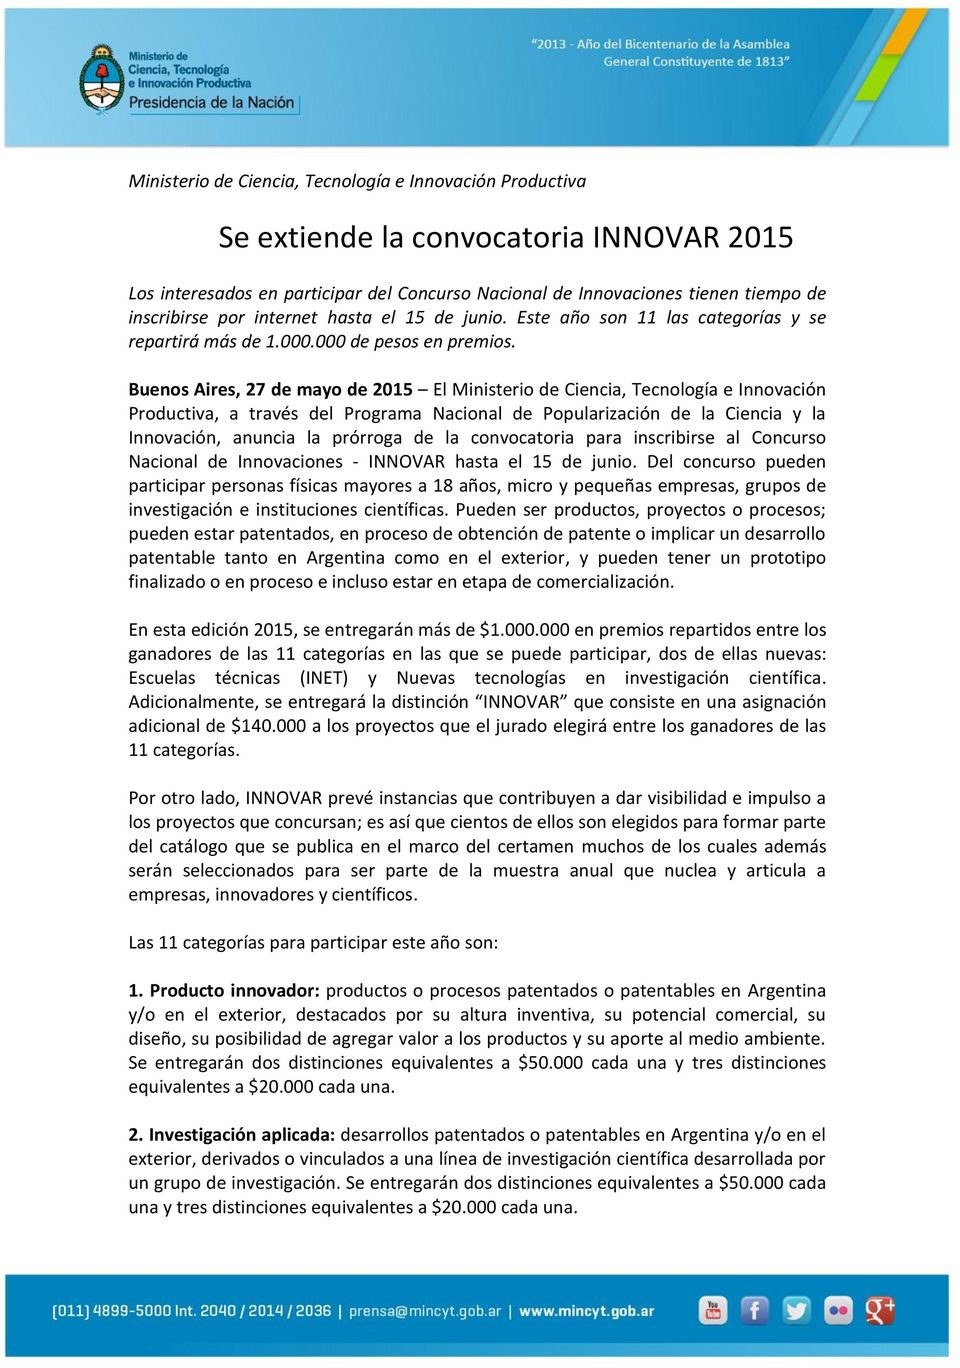 Buenos Aires, 27 de mayo de 2015 El Ministerio de Ciencia, Tecnología e Innovación Productiva, a través del Programa Nacional de Popularización de la Ciencia y la Innovación, anuncia la prórroga de